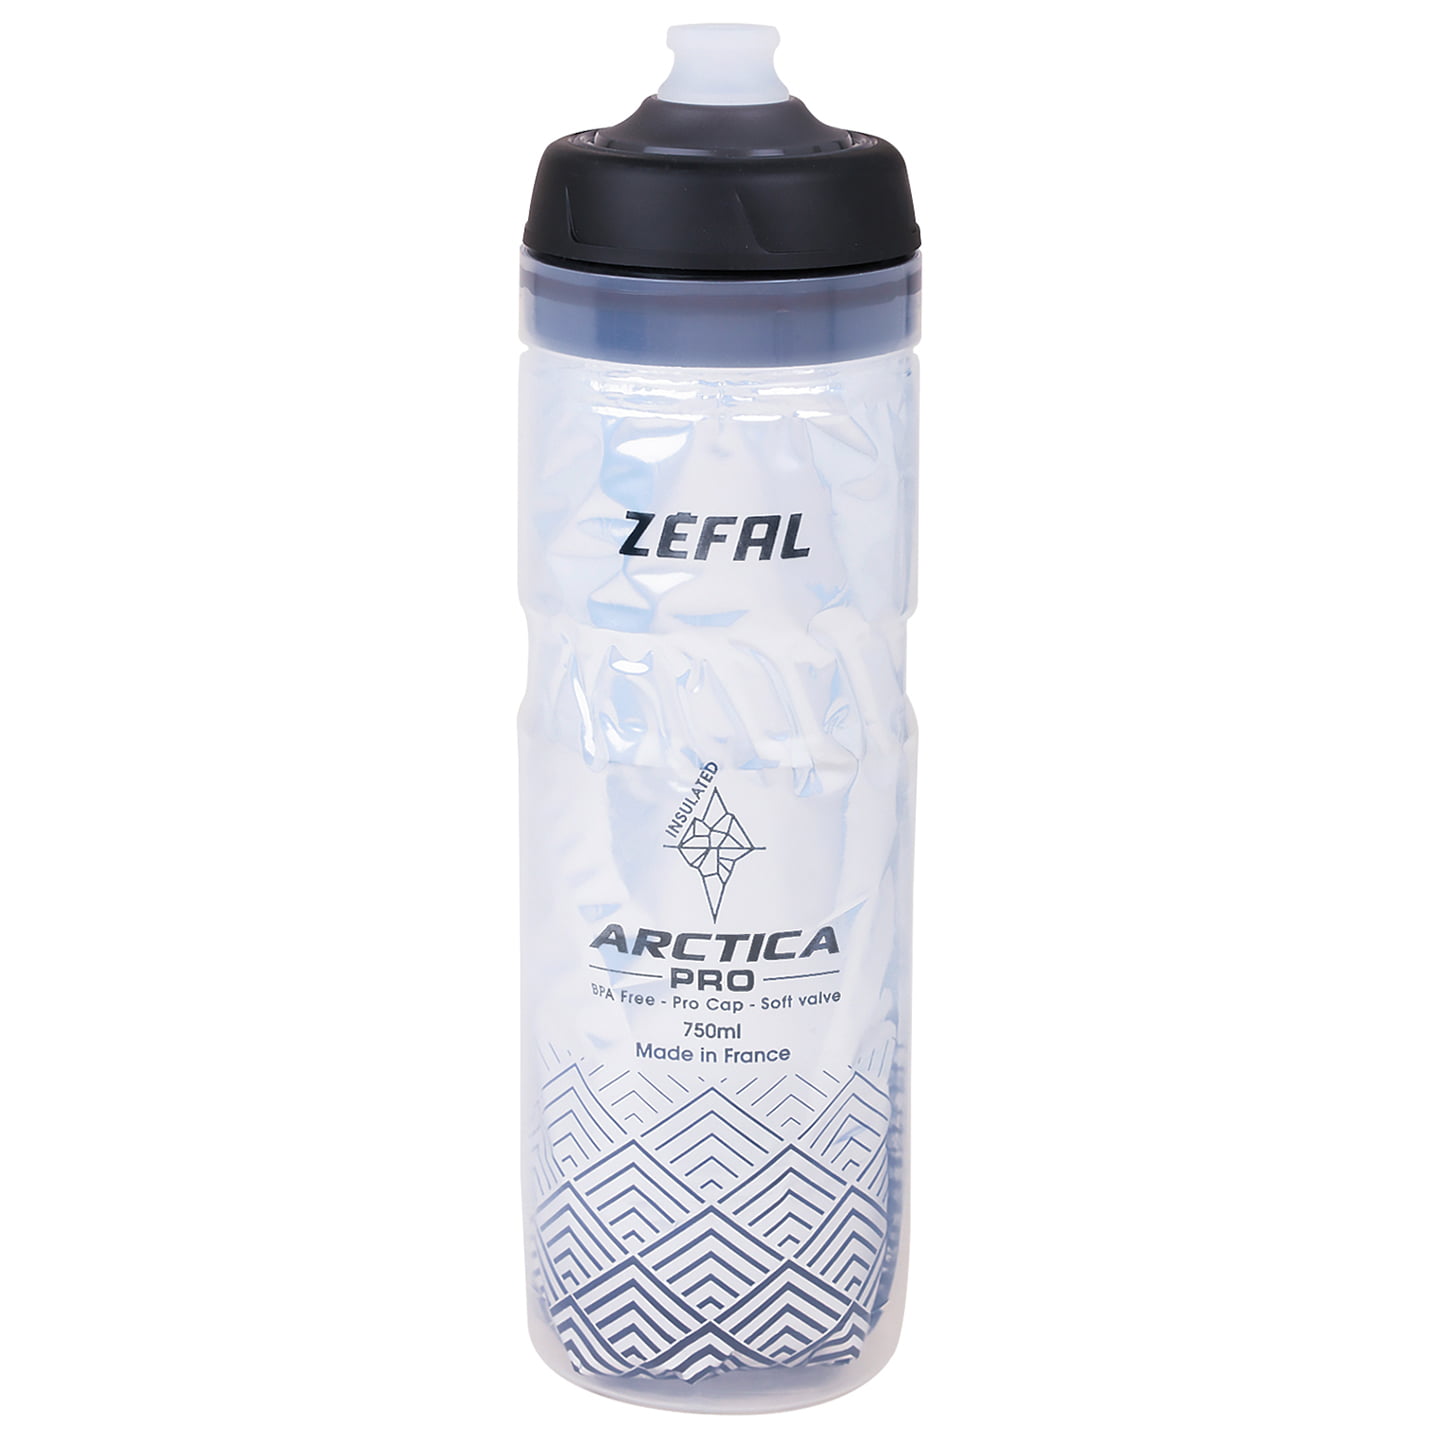 ZEFAL Arctica Pro 750 ml Water Bottle Water Bottle, Bike bottle, Bike accessories